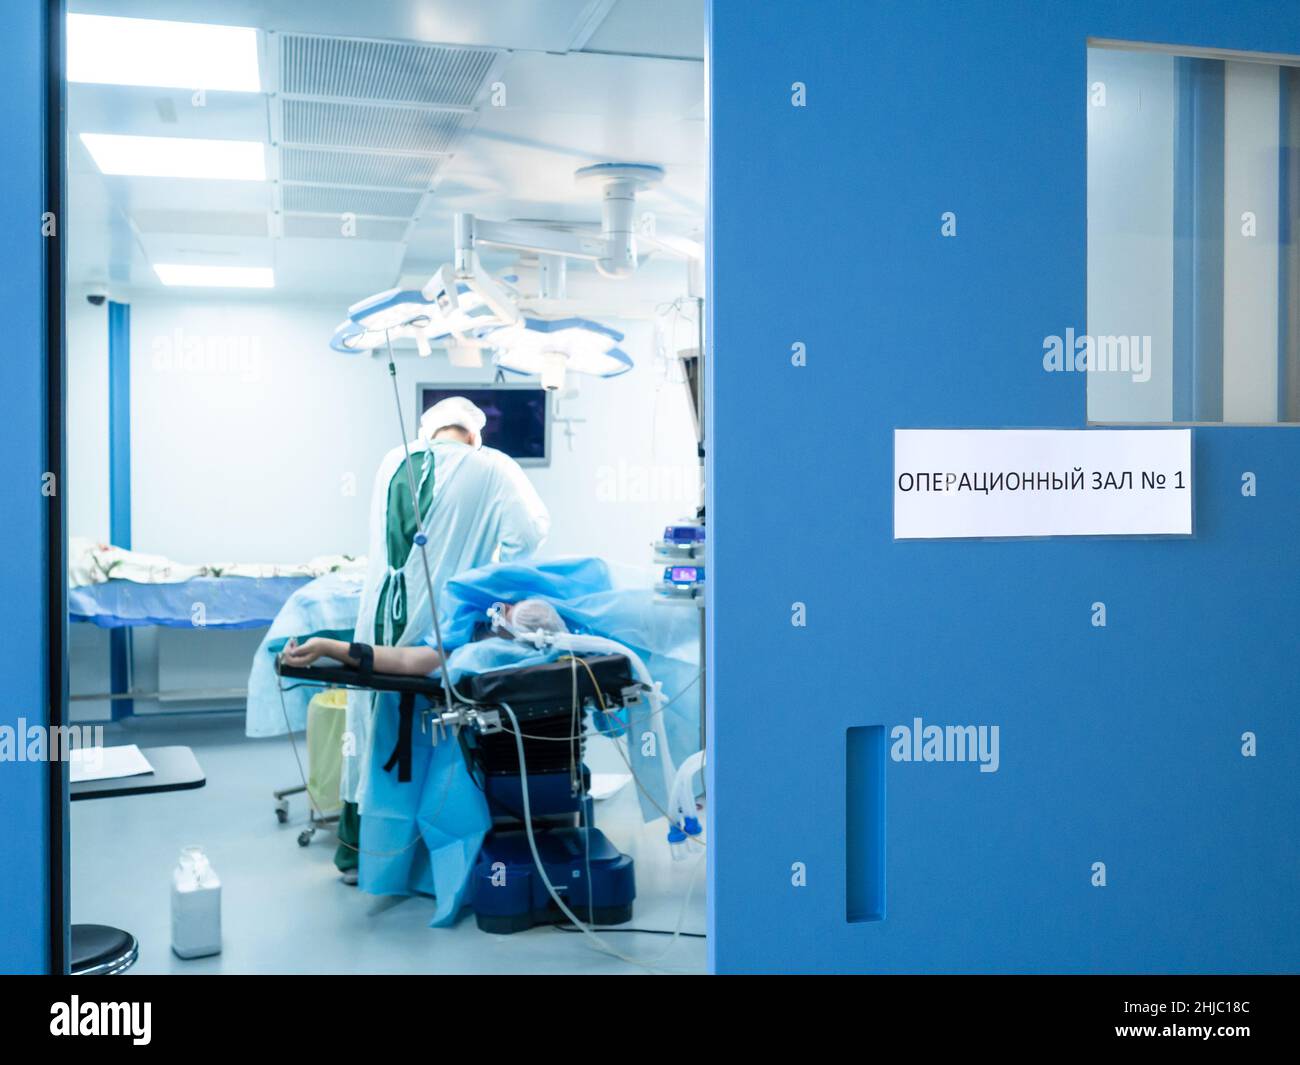 Selektiver Fokus auf die blaue Tür mit einem Schild in russischer Sprache: Operationssaal Nr. 1. Vor einem verschwommenen Hintergrund operieren Chirurgen auf dem Operationstisch. Stockfoto